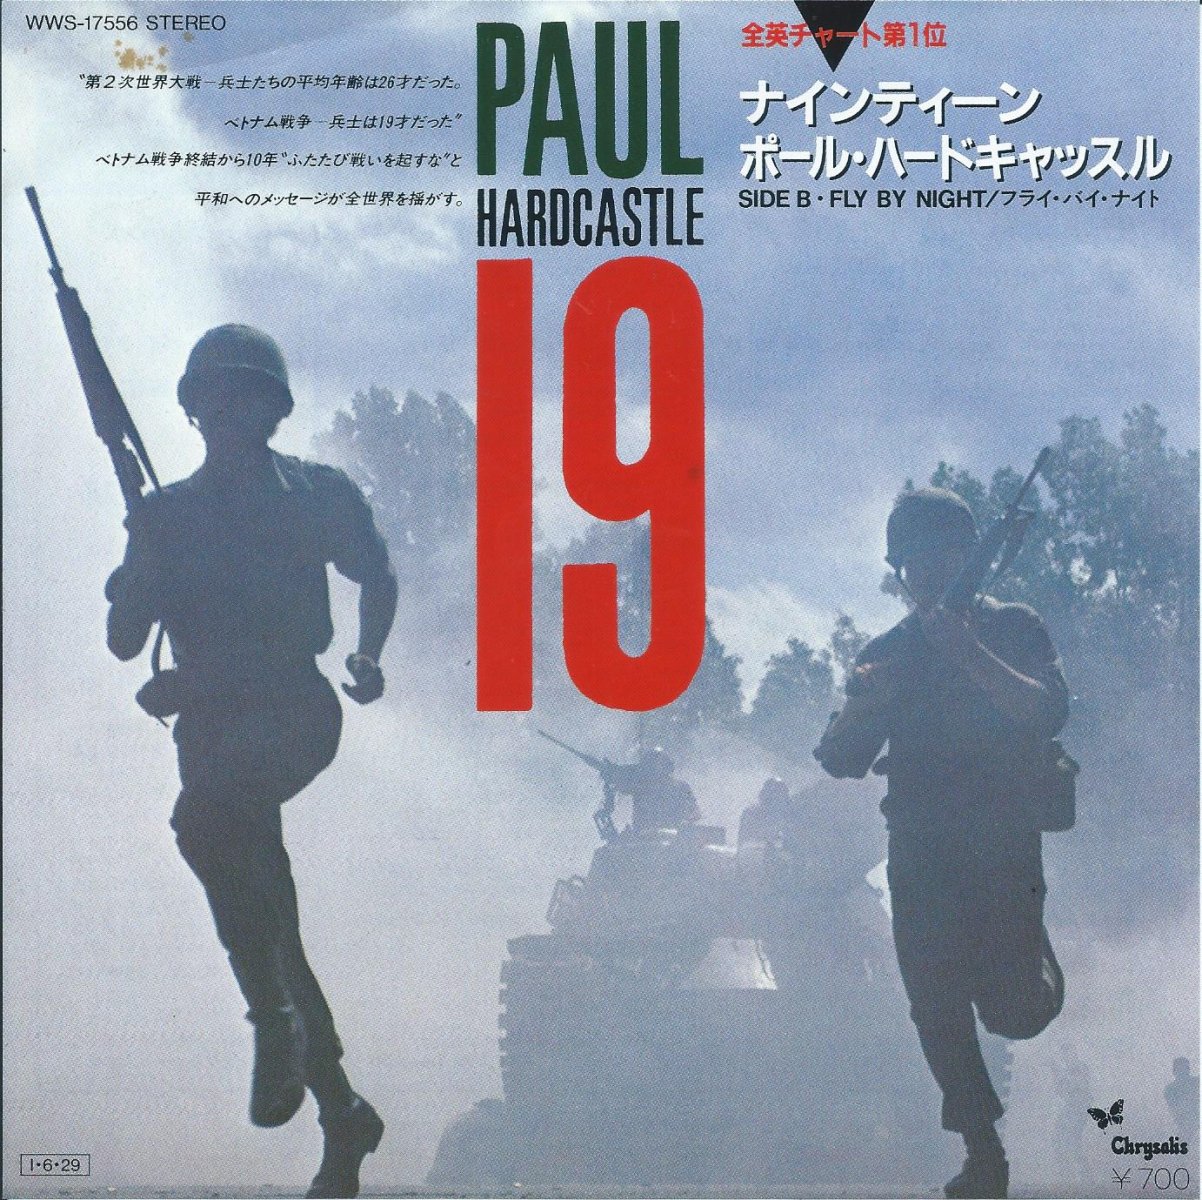 ポール・ハードキャッスル PAUL HARDCASTLE / ナインティーン 19 (7